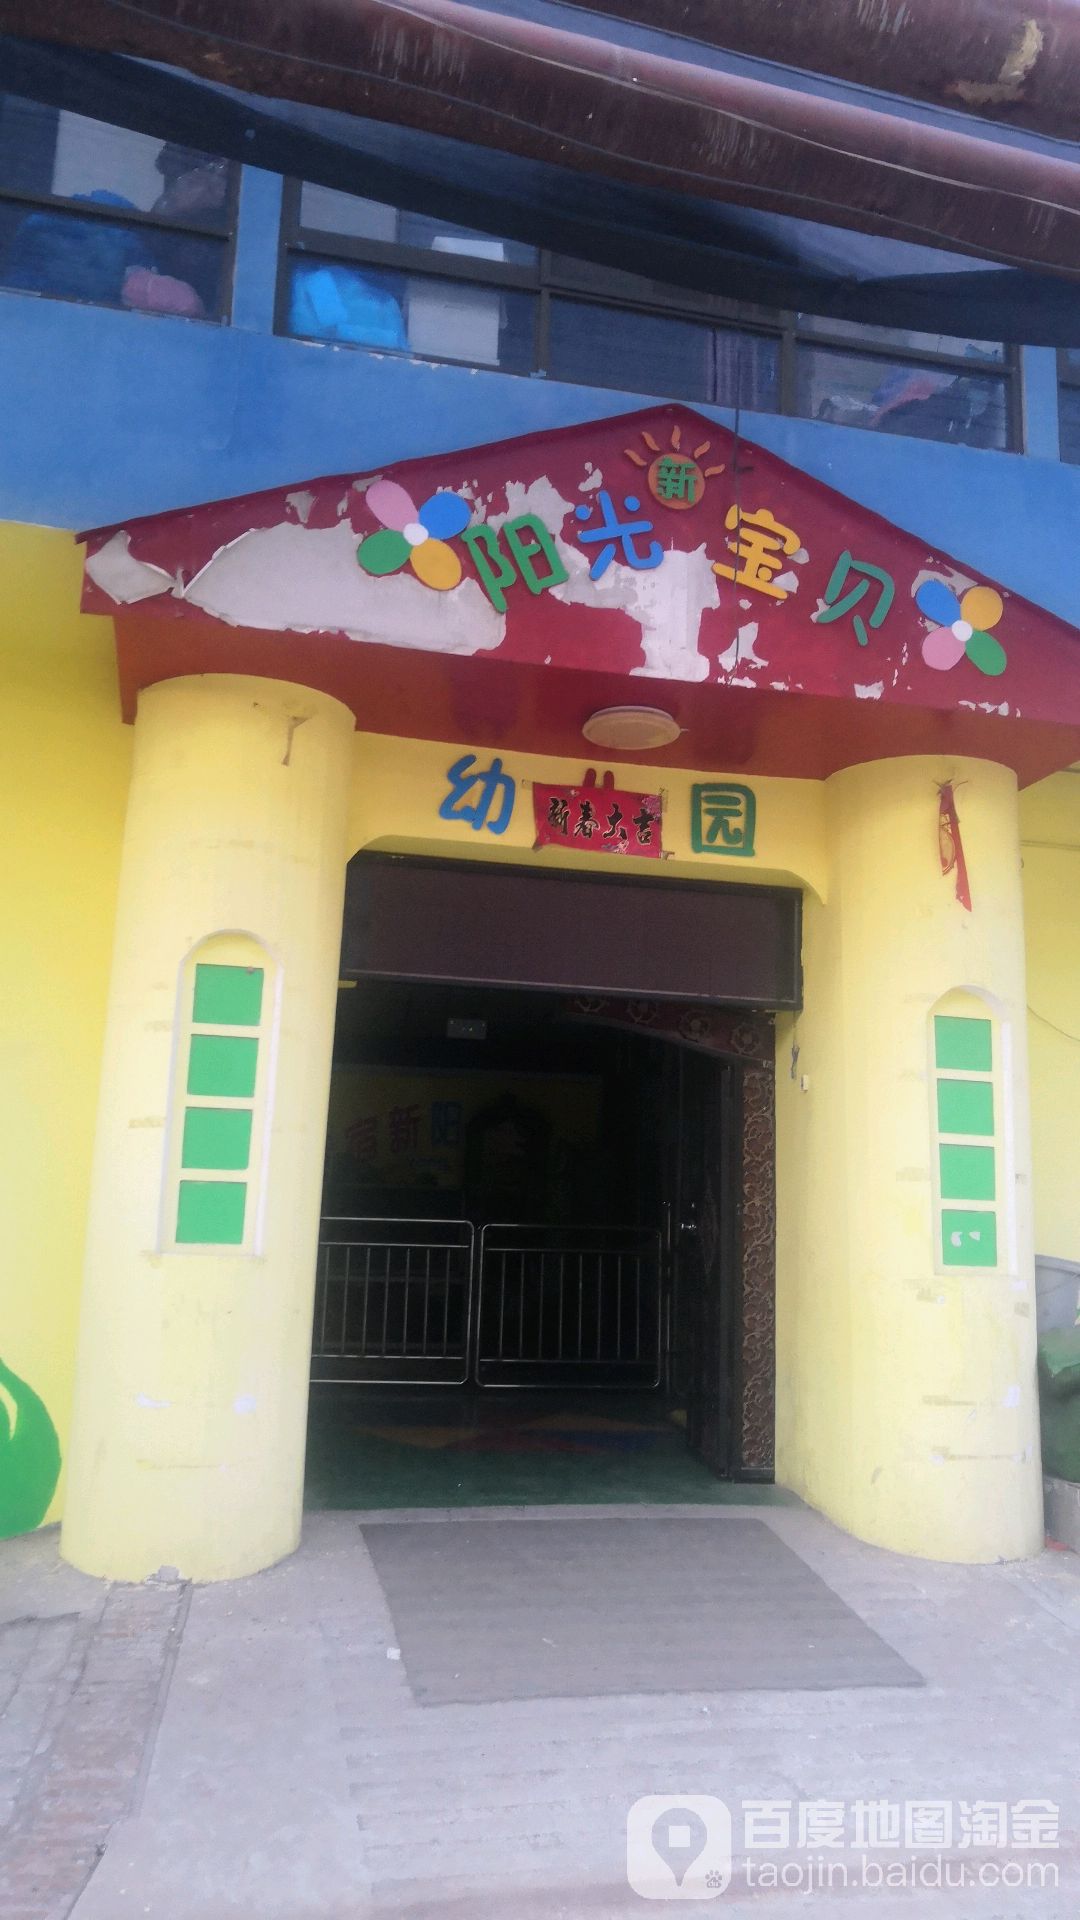 新阳光宝贝幼儿园的图片